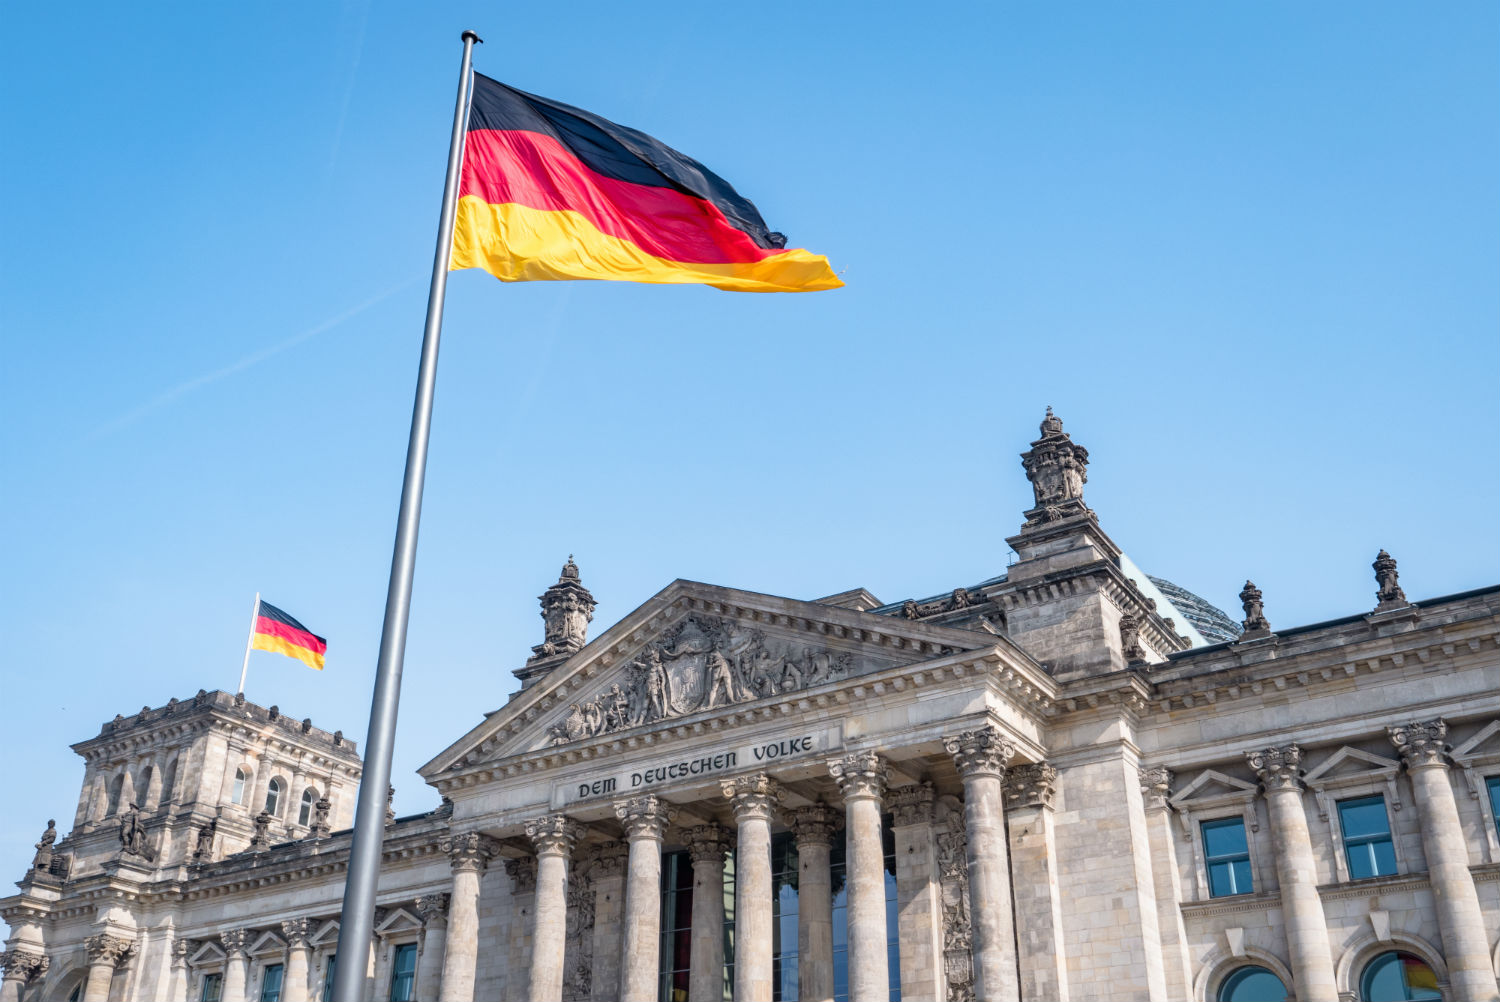 ԱԺ պատգամավորները Գերմանիա կմեկնեն աշխատանքայի՞ն, թե՞ տուրիստական այցով. «Ժողովուրդ»